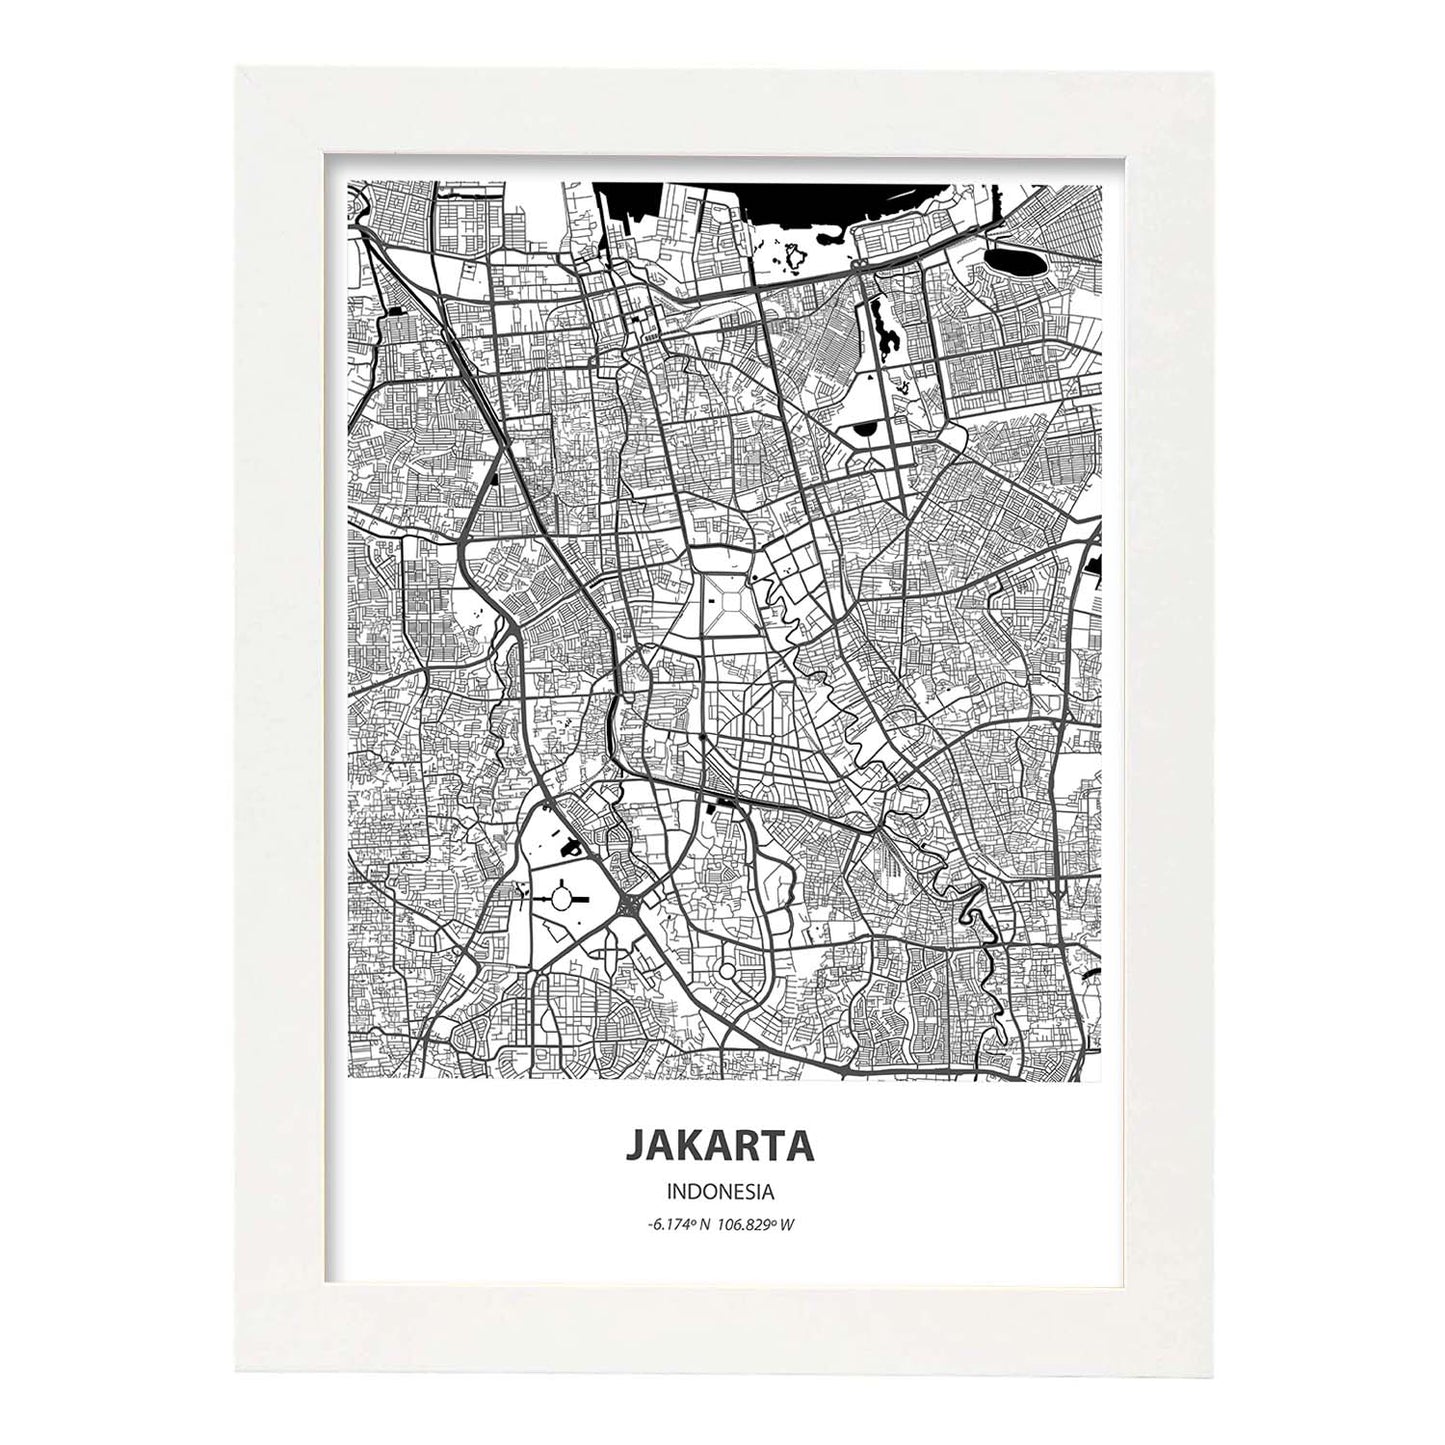 Poster con mapa de Jakarta - Indonesia. Láminas de ciudades de Asia con mares y ríos en color negro.-Artwork-Nacnic-A3-Marco Blanco-Nacnic Estudio SL